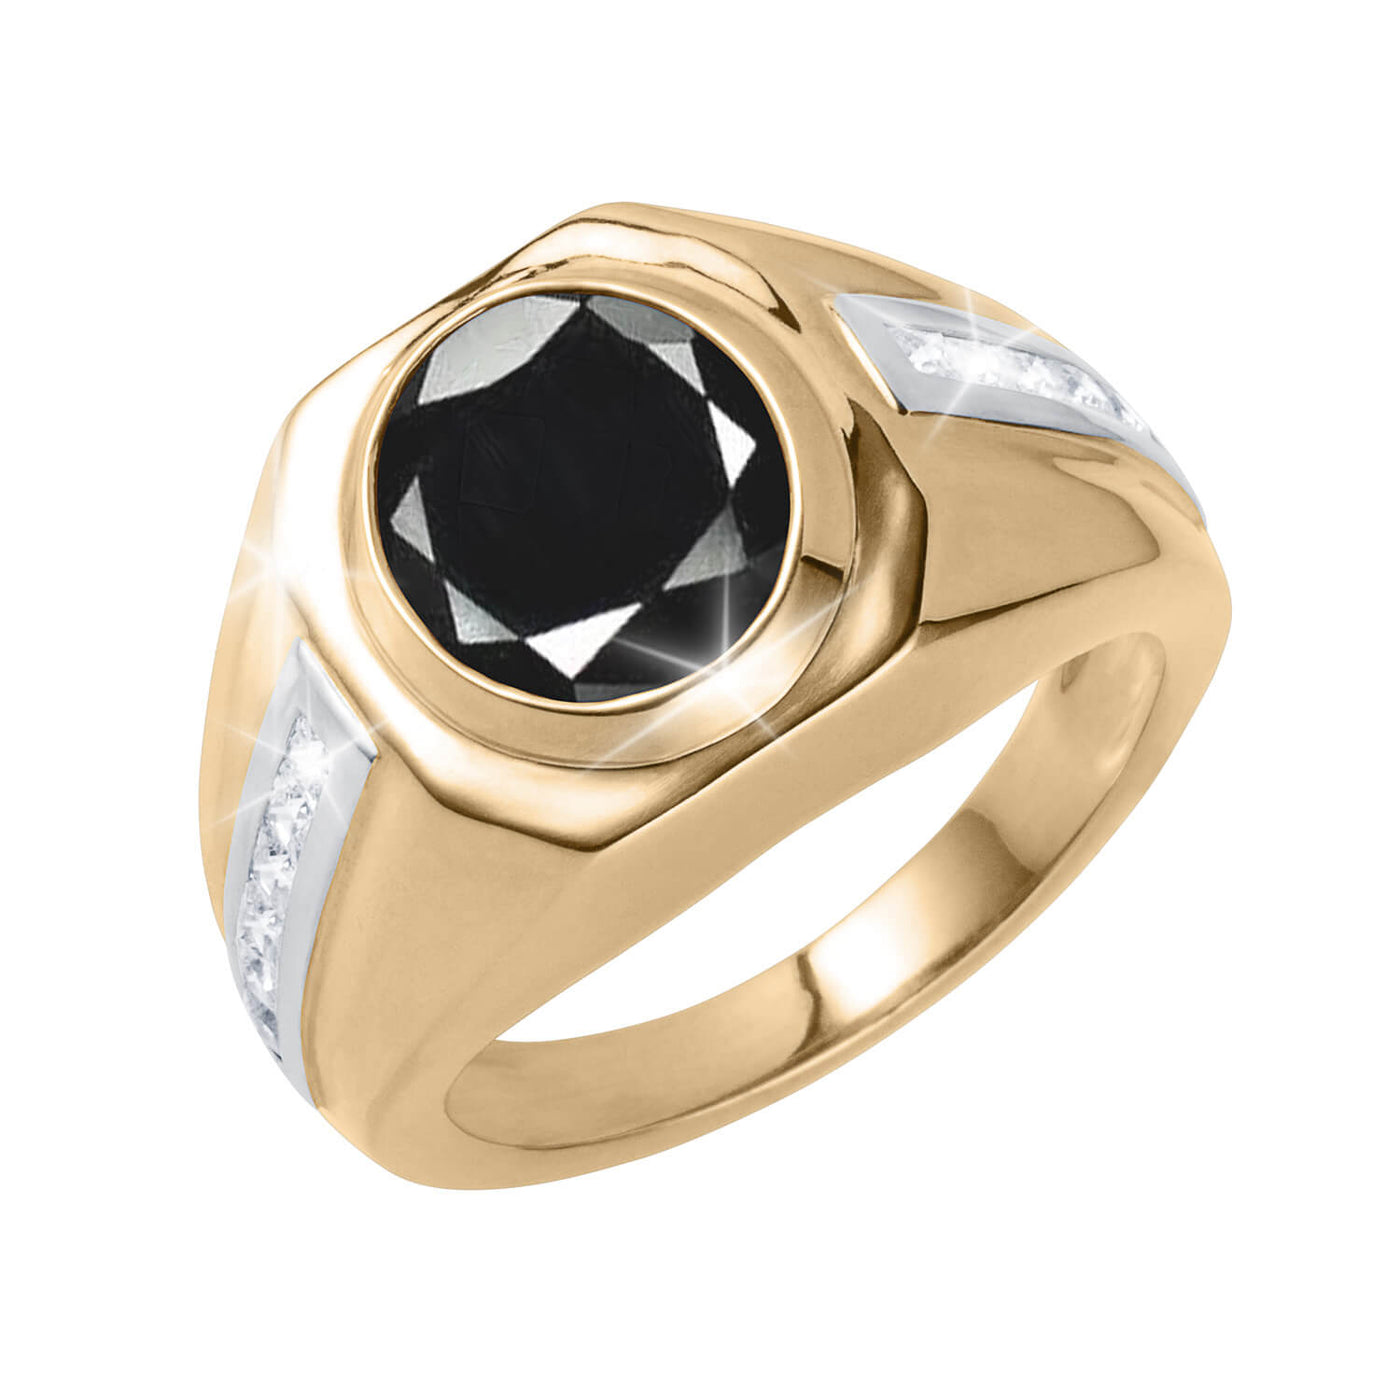 Daniel Steiger Eclipse Midnight Sapphire Ring